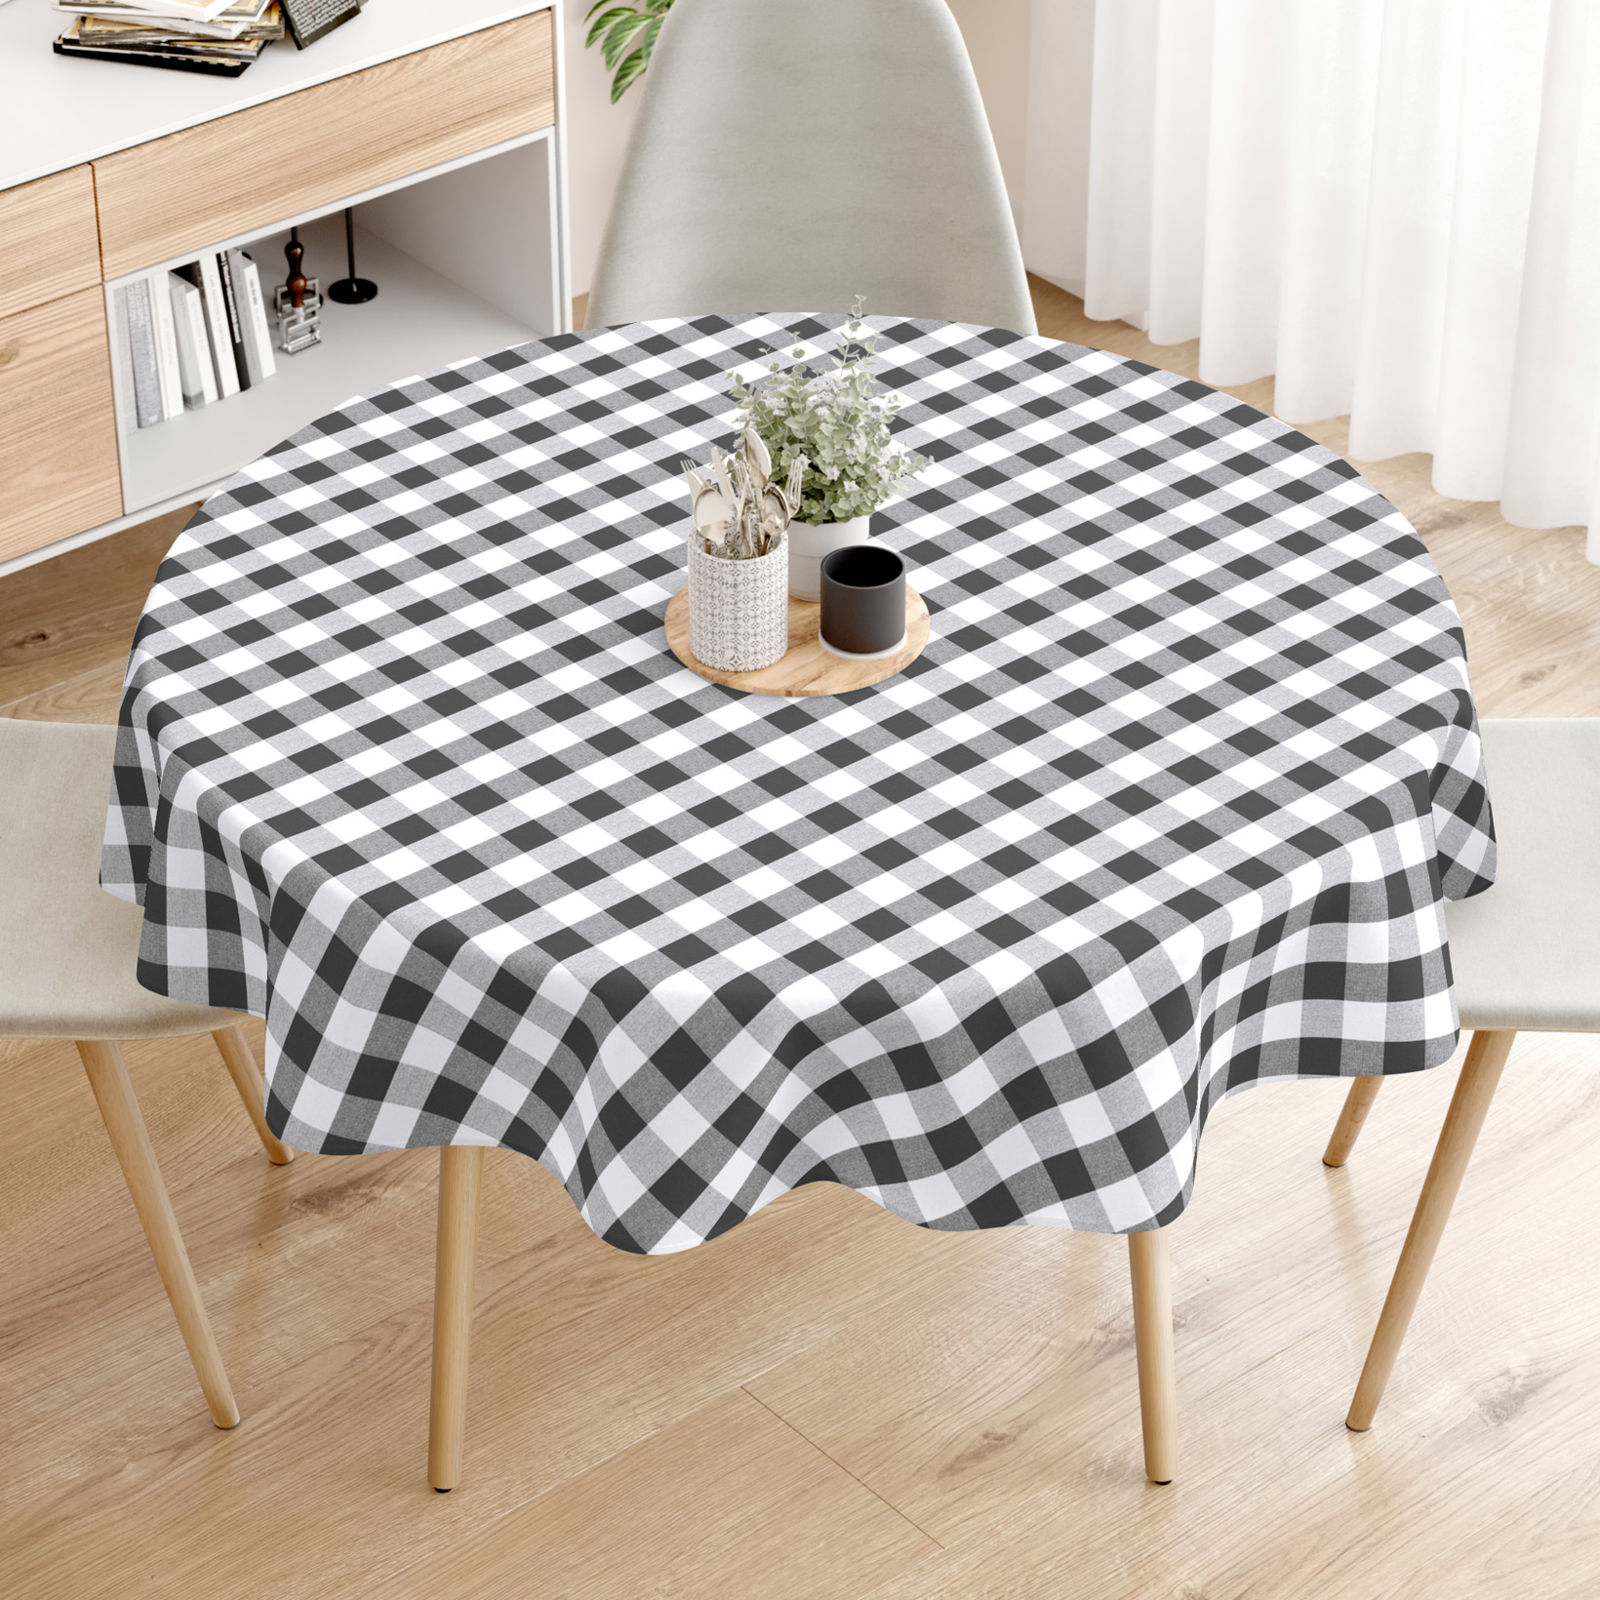 Față de masă decorativă MENORCA - carouri mari de culoare gri-închis și alb - rotundă